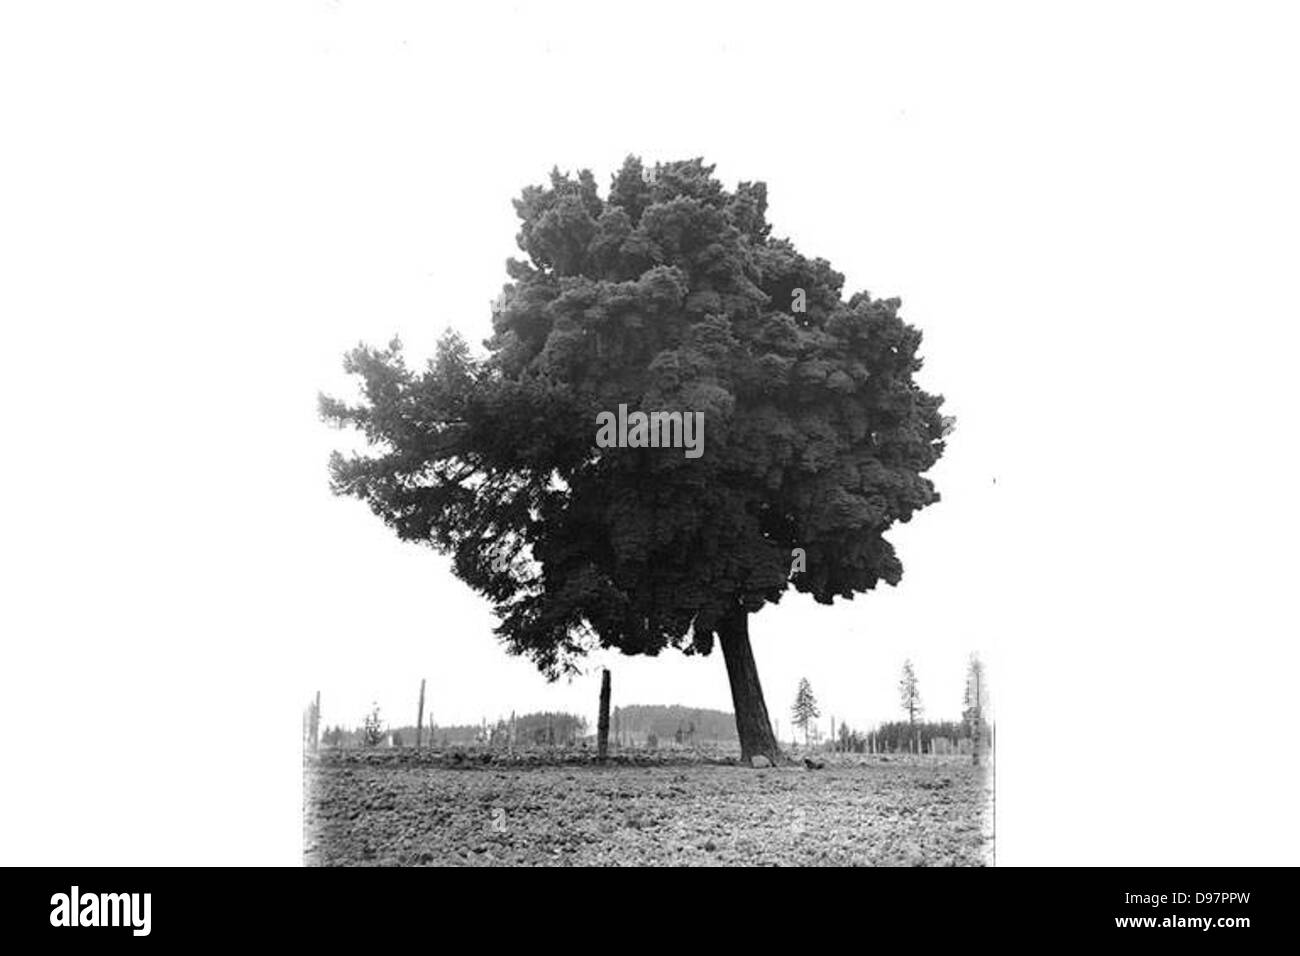 Single large tree leaning to left, Washington state Stock Photo